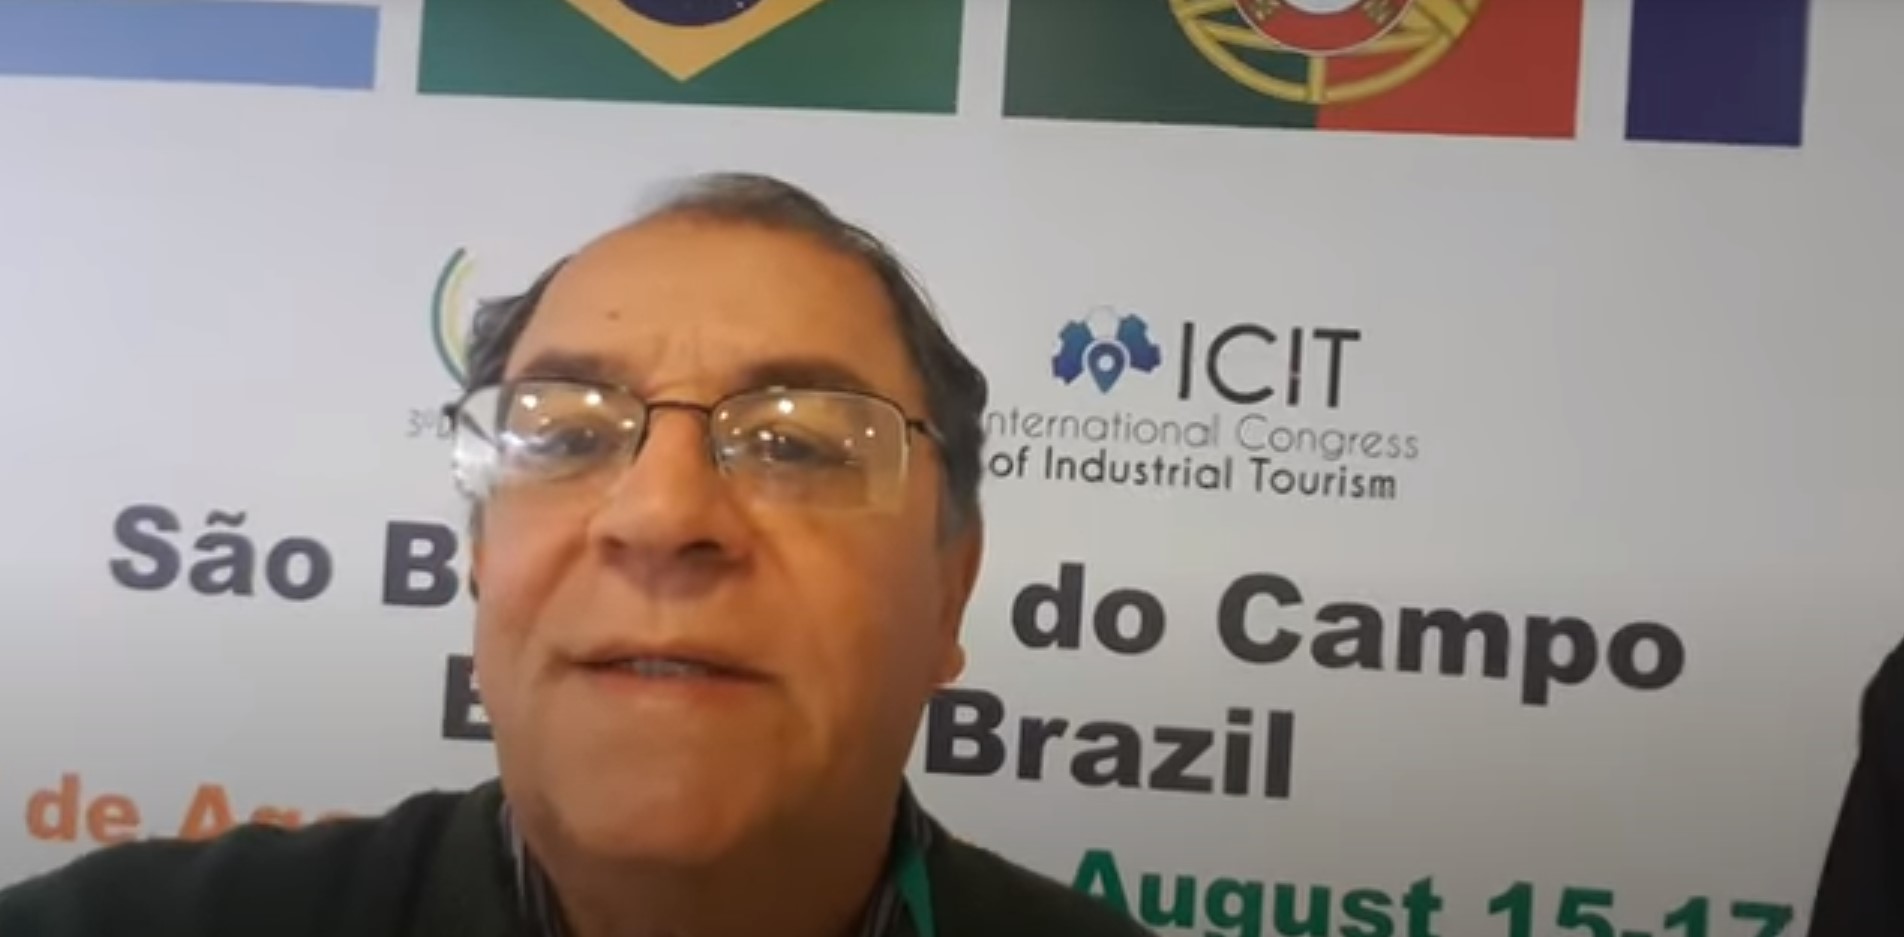 Congresso internacional de turismo industrial